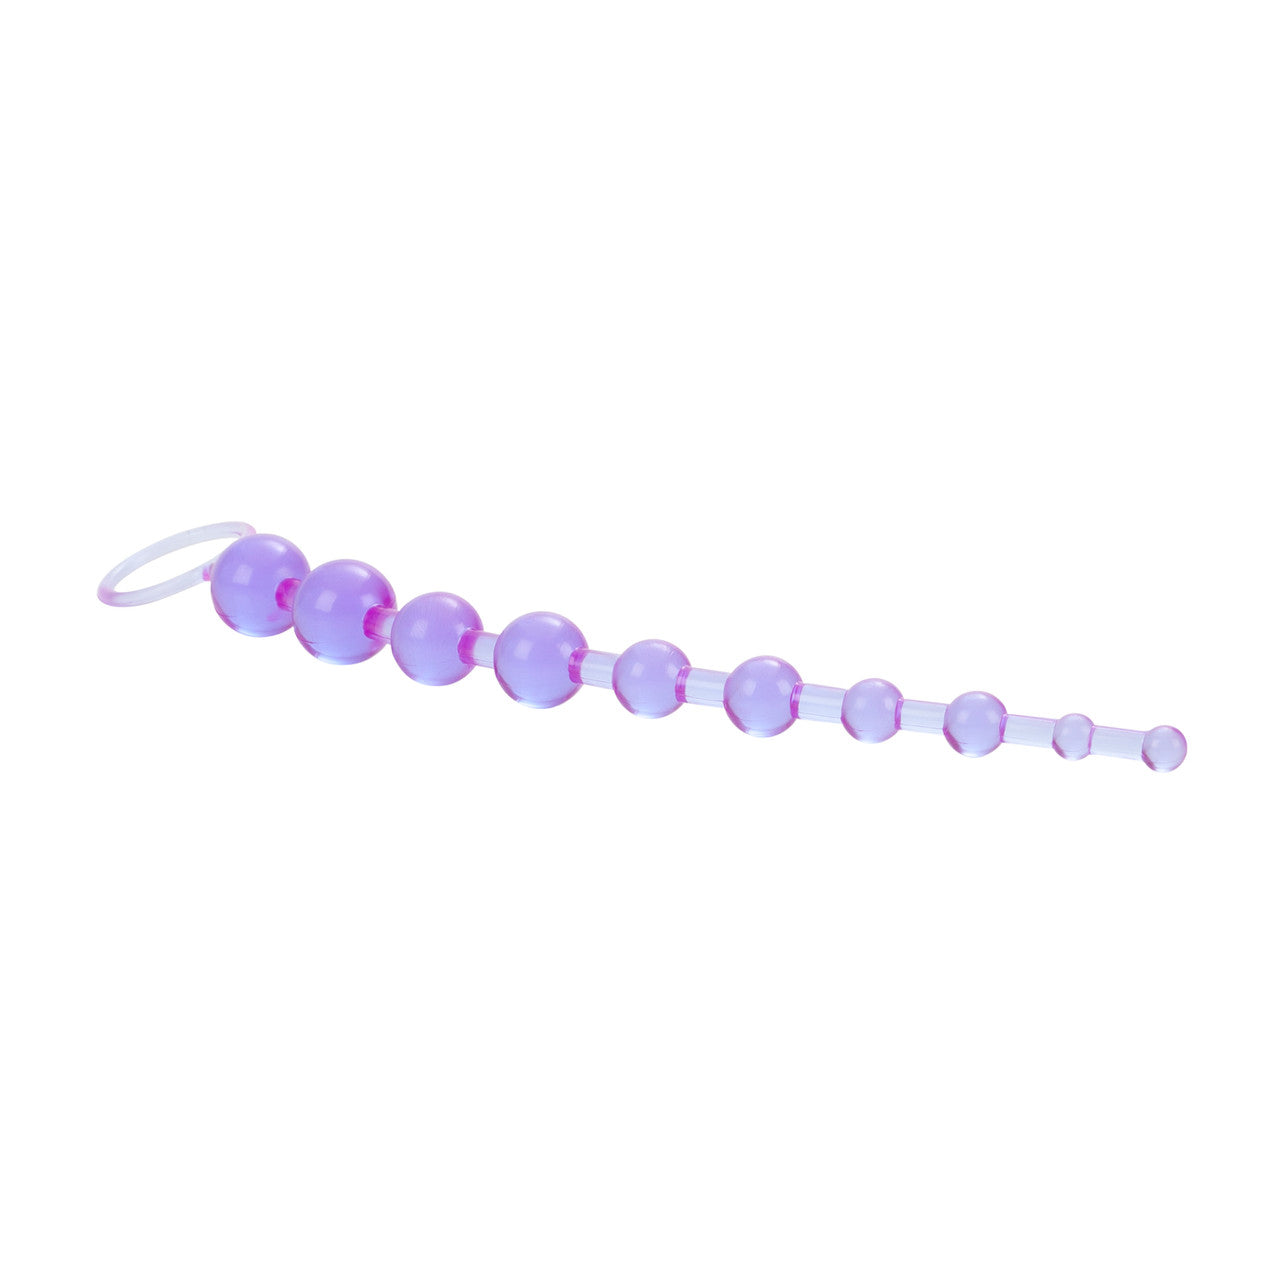 X-10 Anal Beads - Purple